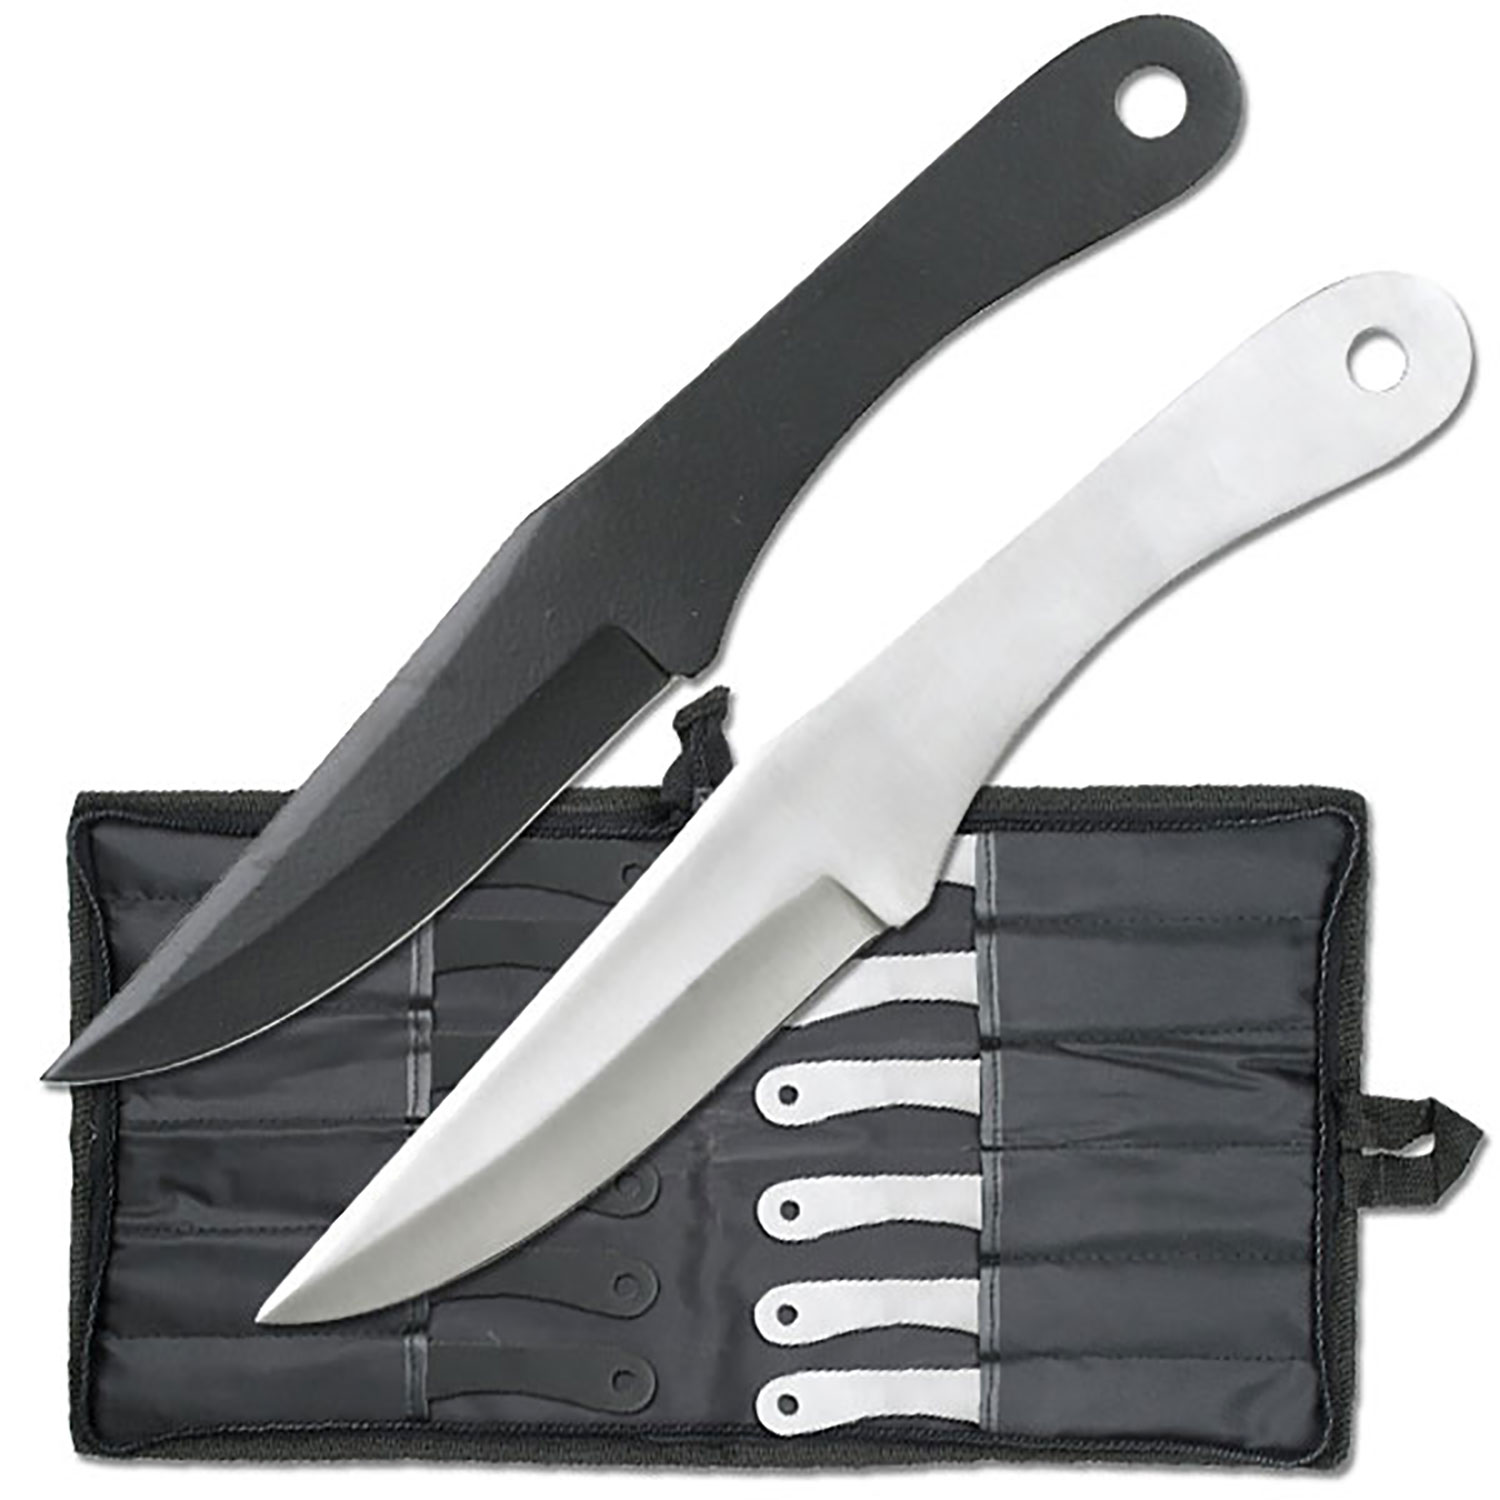 8.5in. Dozen 12 Pc. Black/Silver Ripper Throwing Knife Set w/ Case